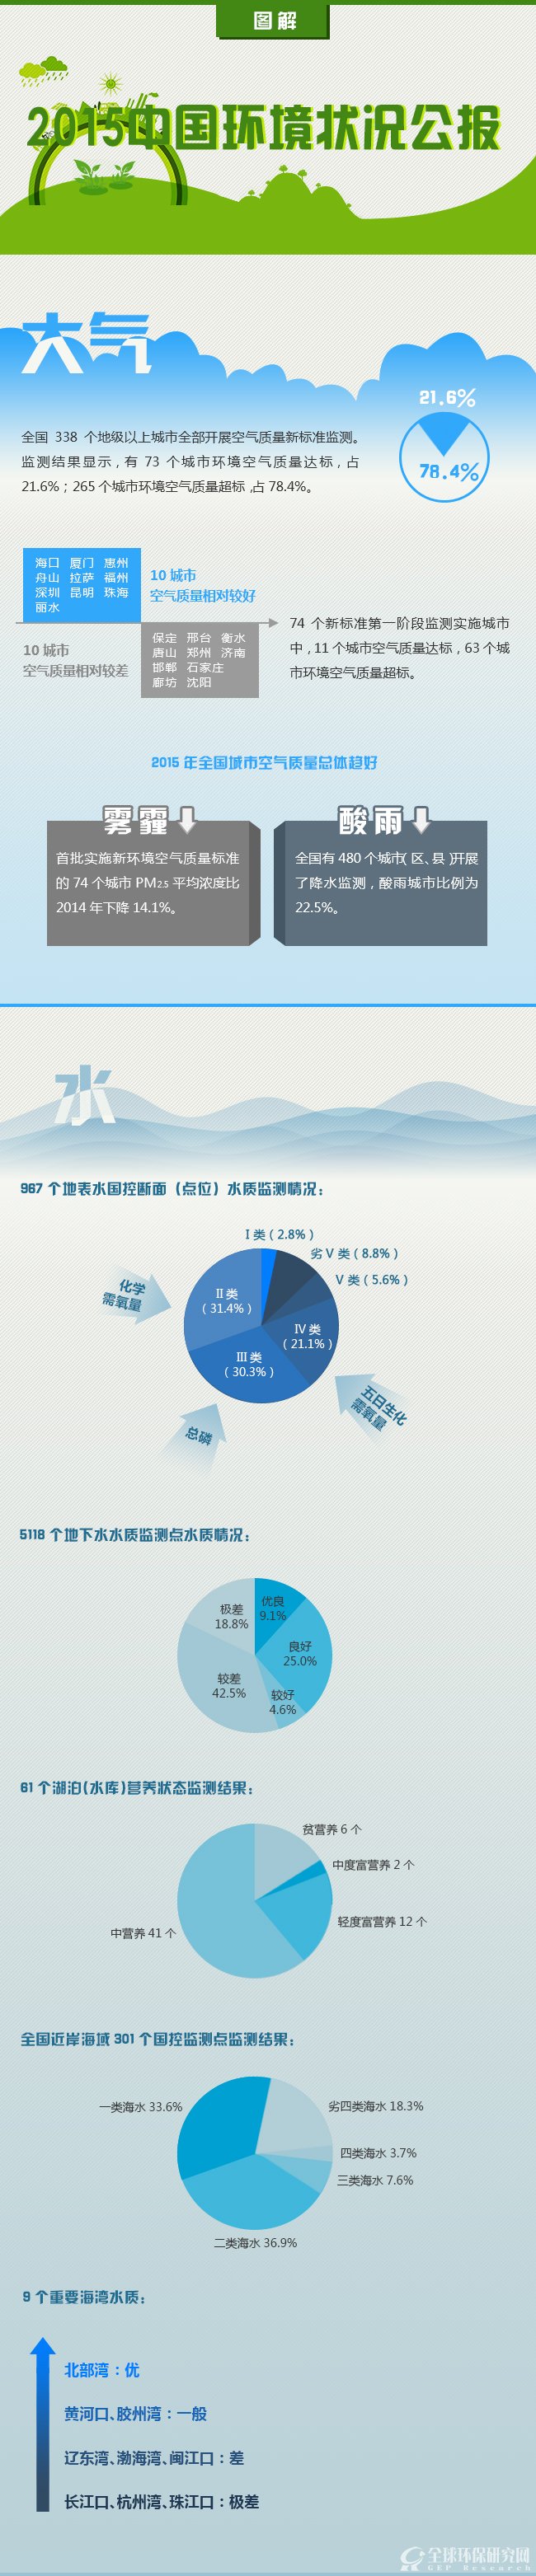 图解:2015中国环境状况公报1